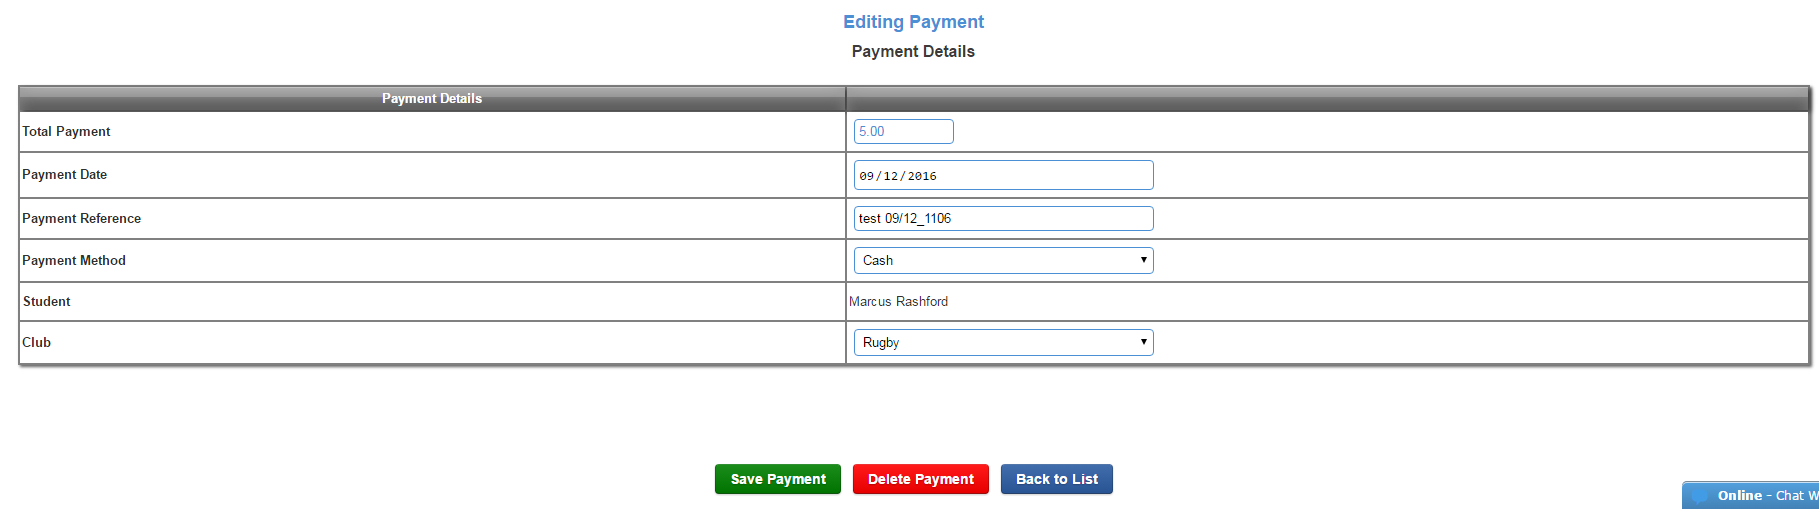 edit payment details.png